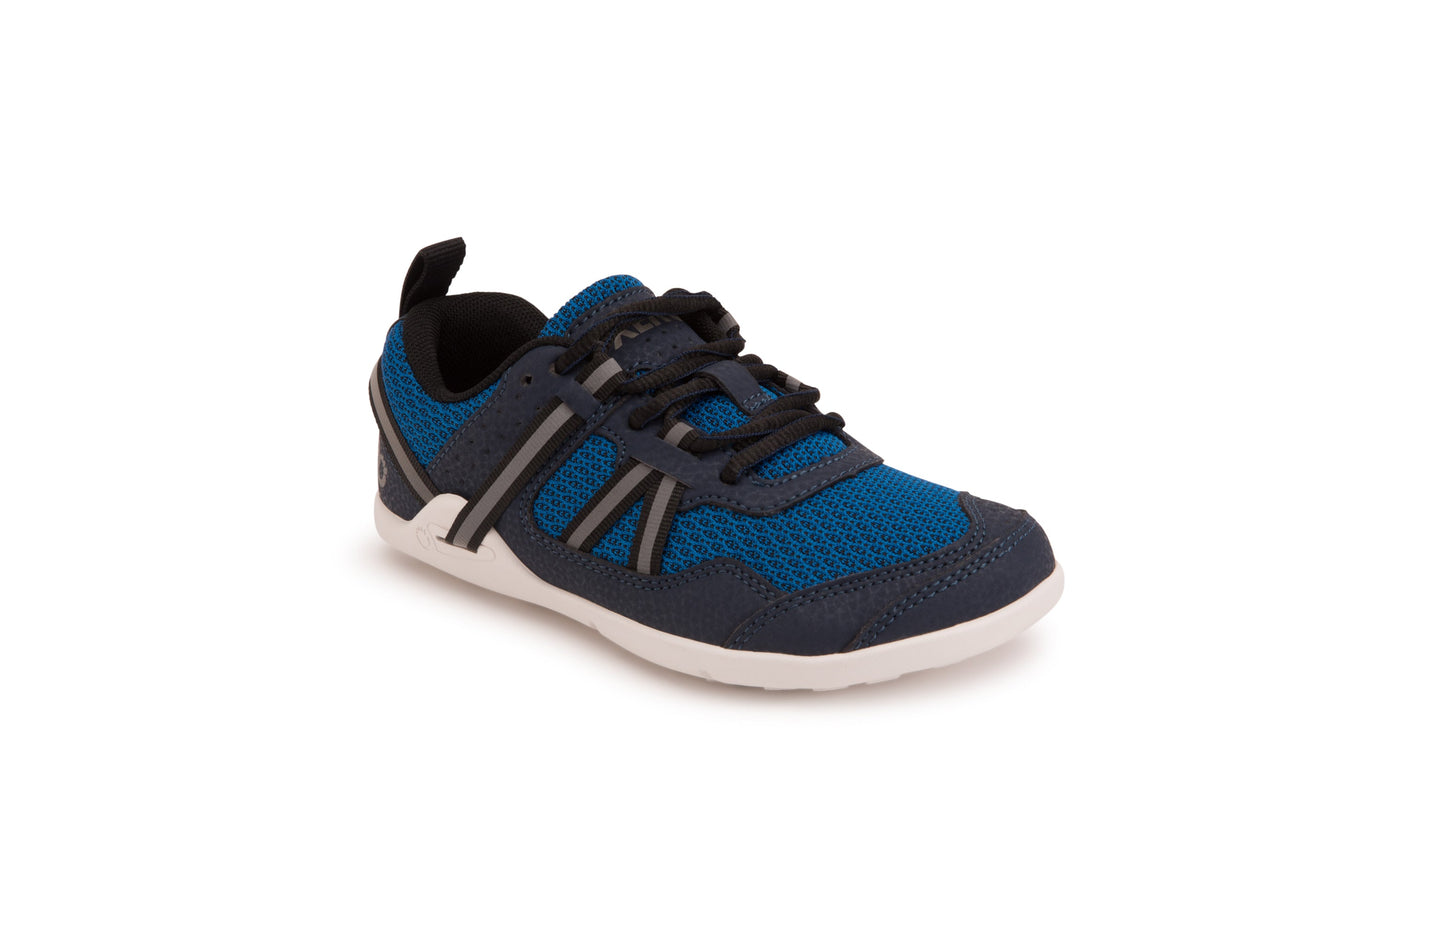 Xero Shoes Prio Kids barfods træningssko/sneakers til børn i farven mykonos blue, vinklet